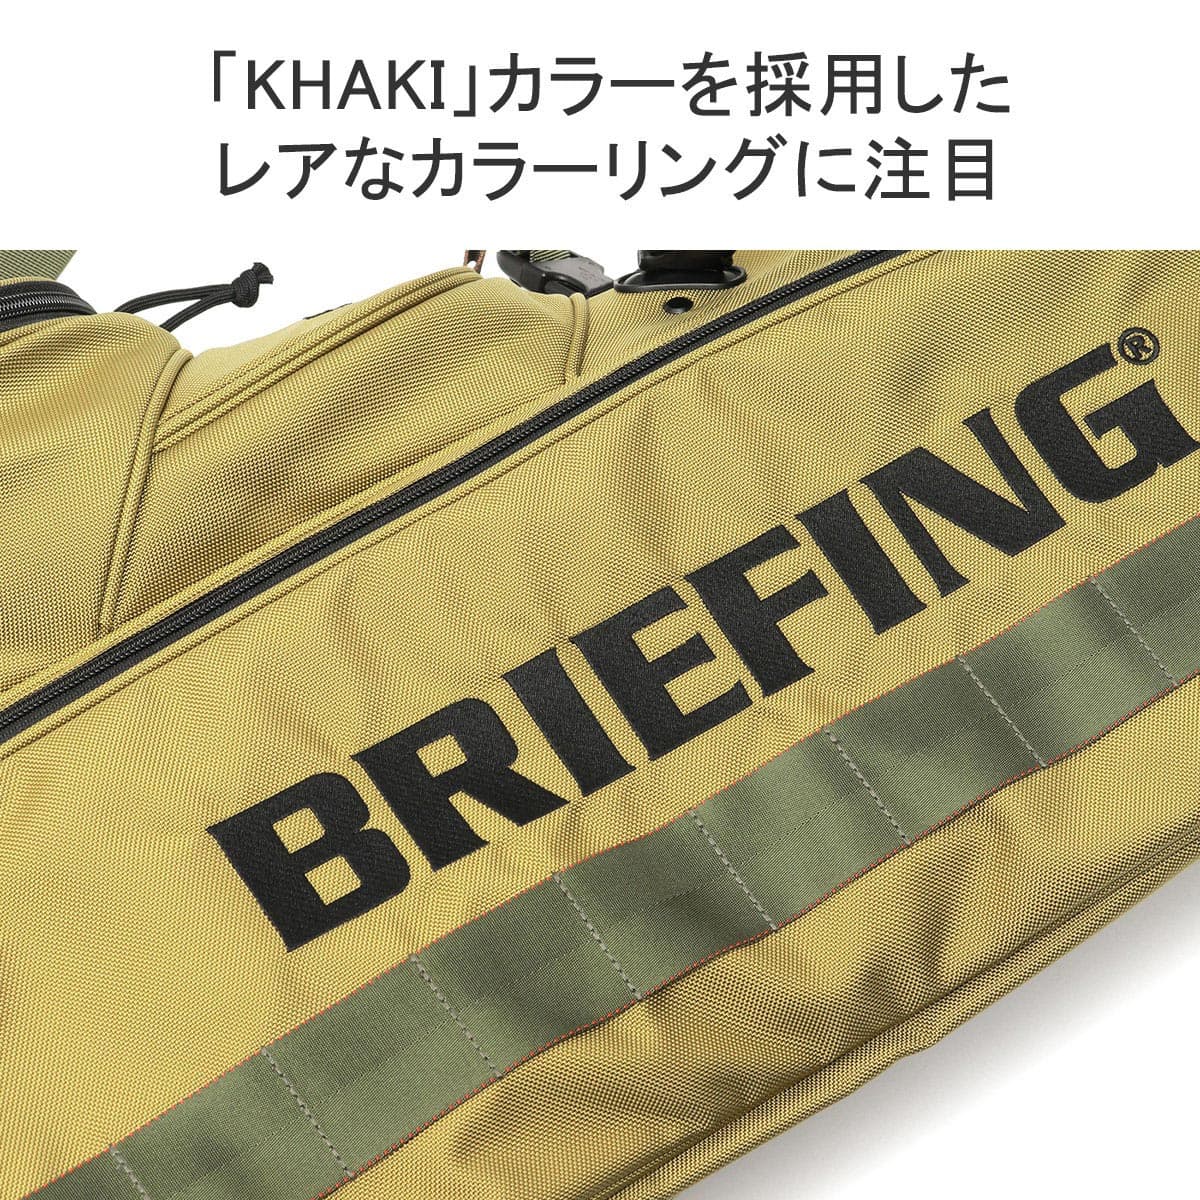 【日本正規品】BRIEFING GOLF ブリーフィング ゴルフ KHAKI COLLECTION CR-4 #03 AIR キャディバッグ 限定  25周年 BRG233D10